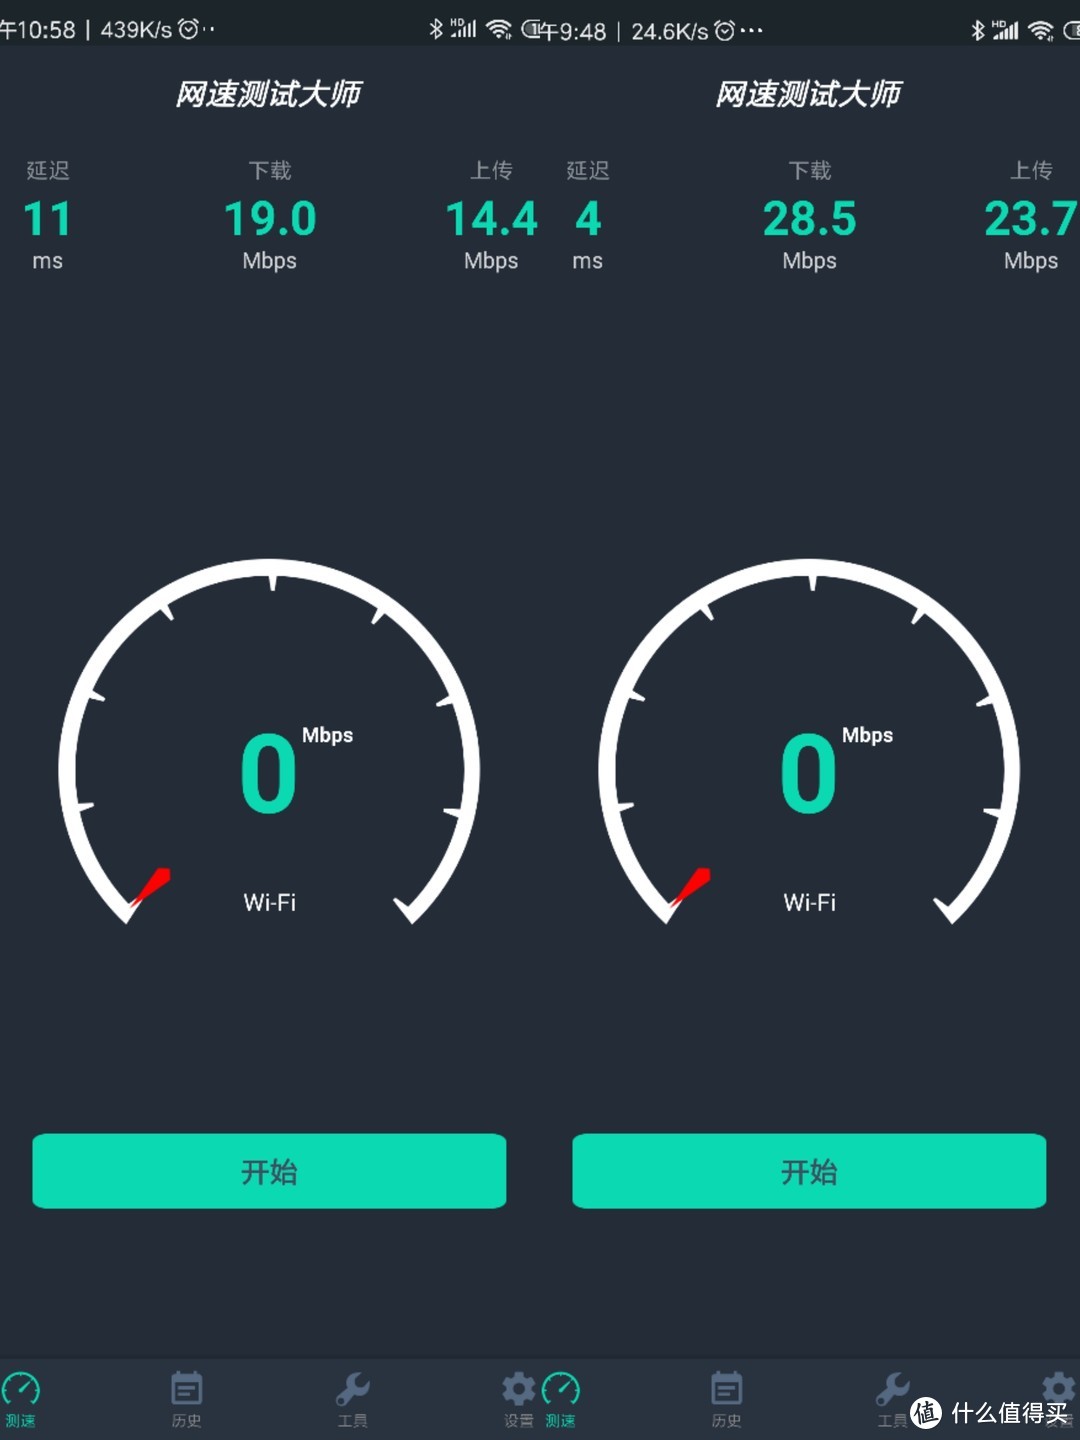 ▲网速测速：左边mini，右边4A，虽然信号强度差距不明显，但是网络传输质量的差距很明显。